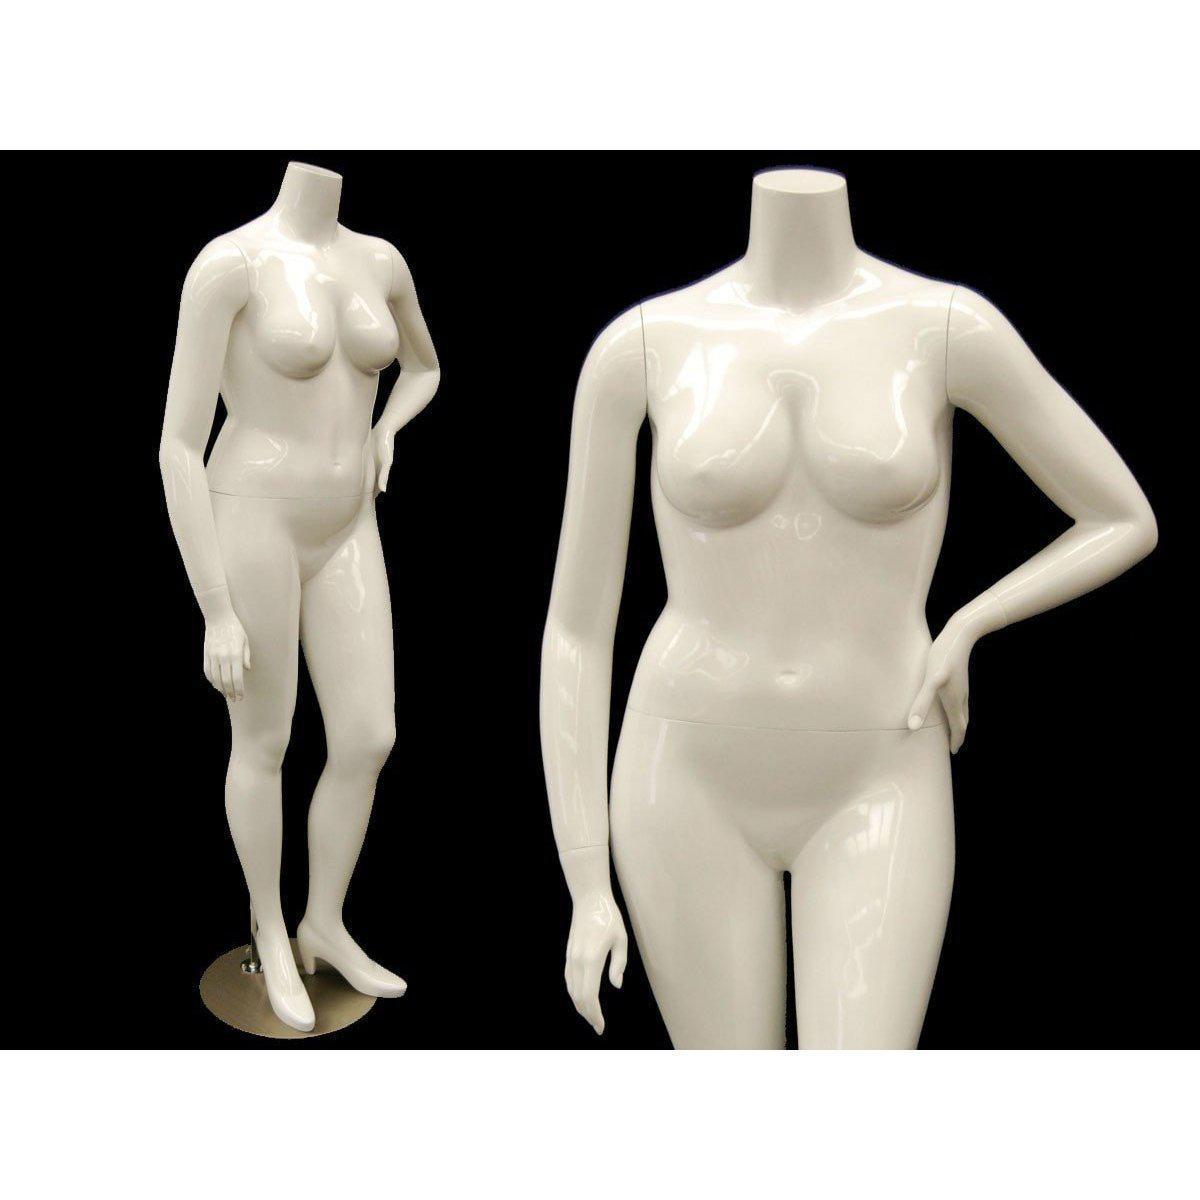 Female Headless Full Body Mannequin - Straight Arms & Legs